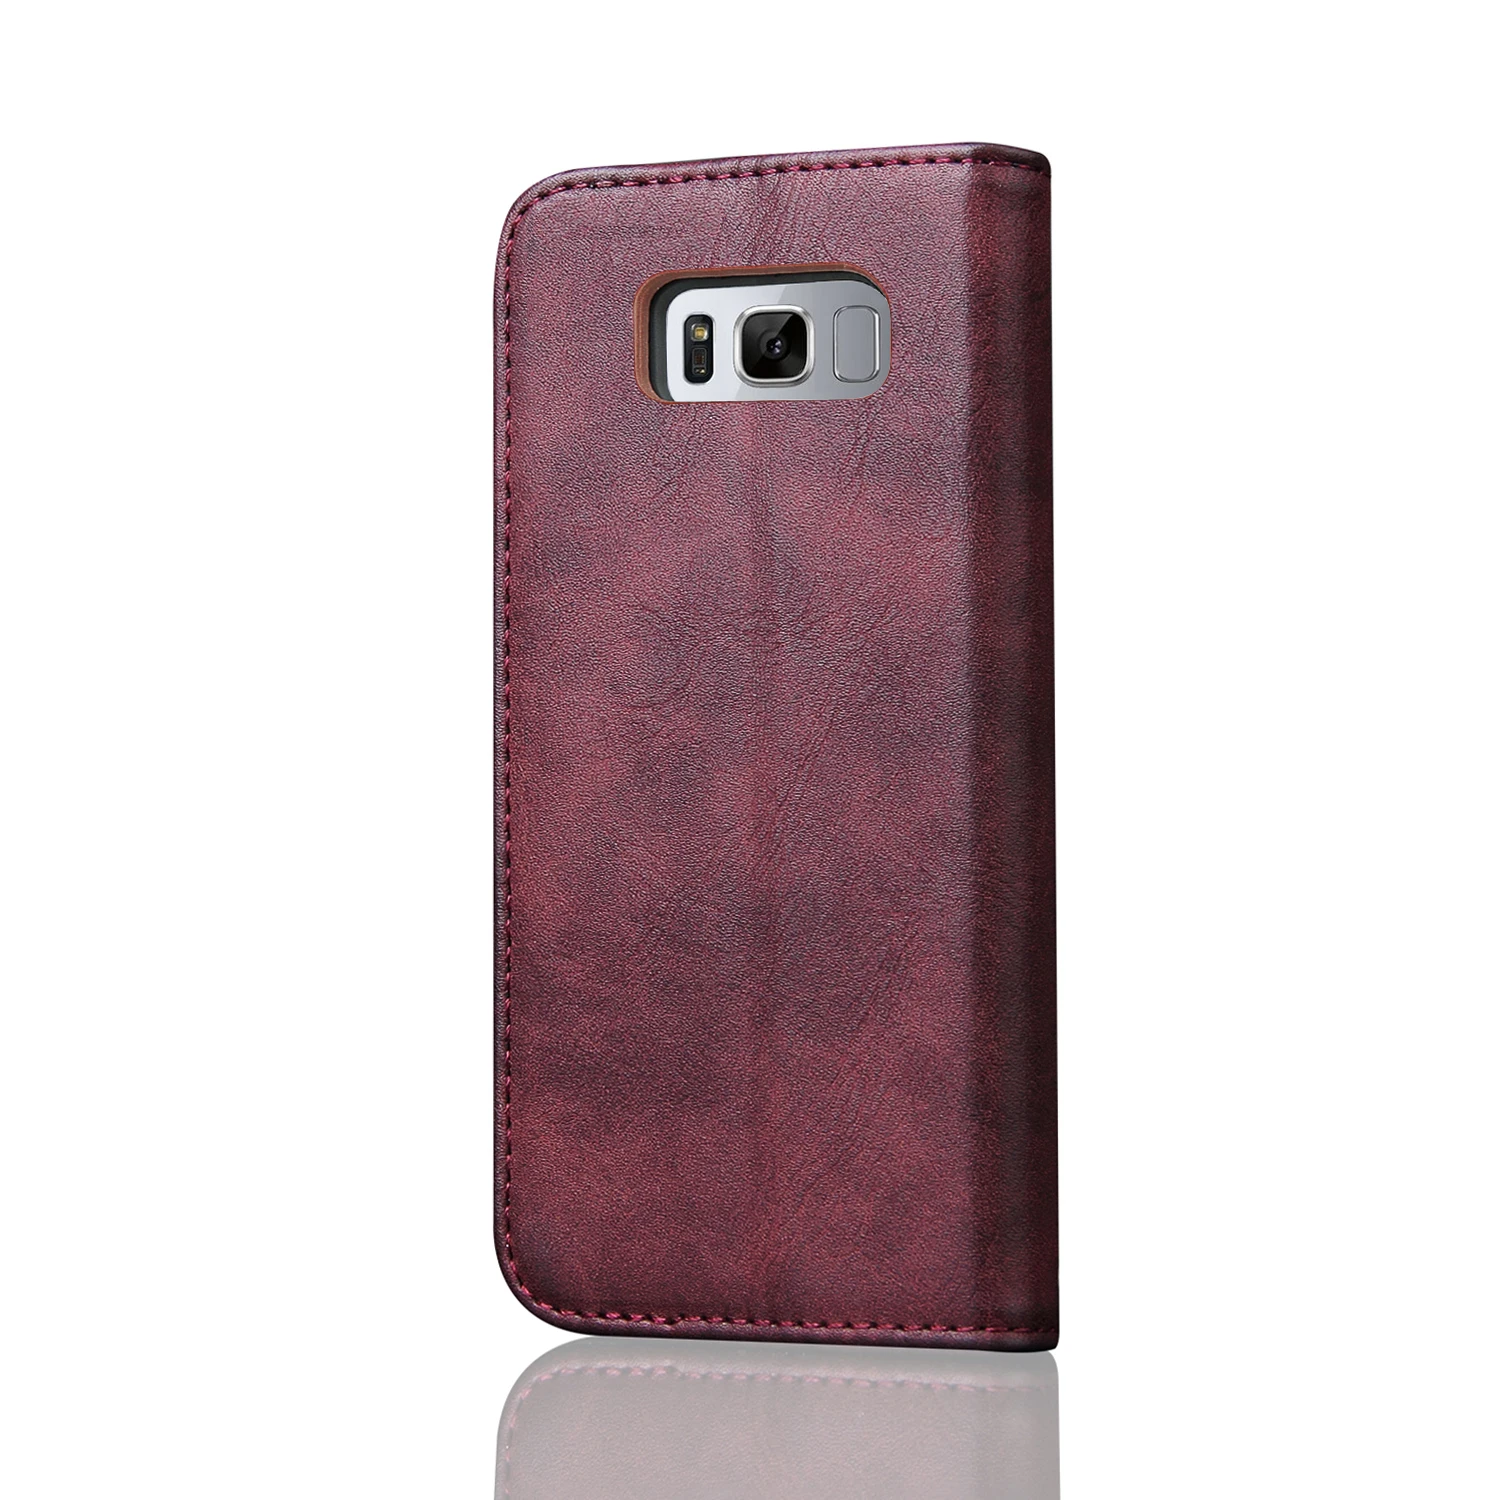 Одежда высшего качества Роскошный Ретро Чехол-книжка с подставкой для карт из натуральной кожи+ сумка из ткани для Samsung Galaxy S8/S8 плюс Чехол-кошелек для телефона